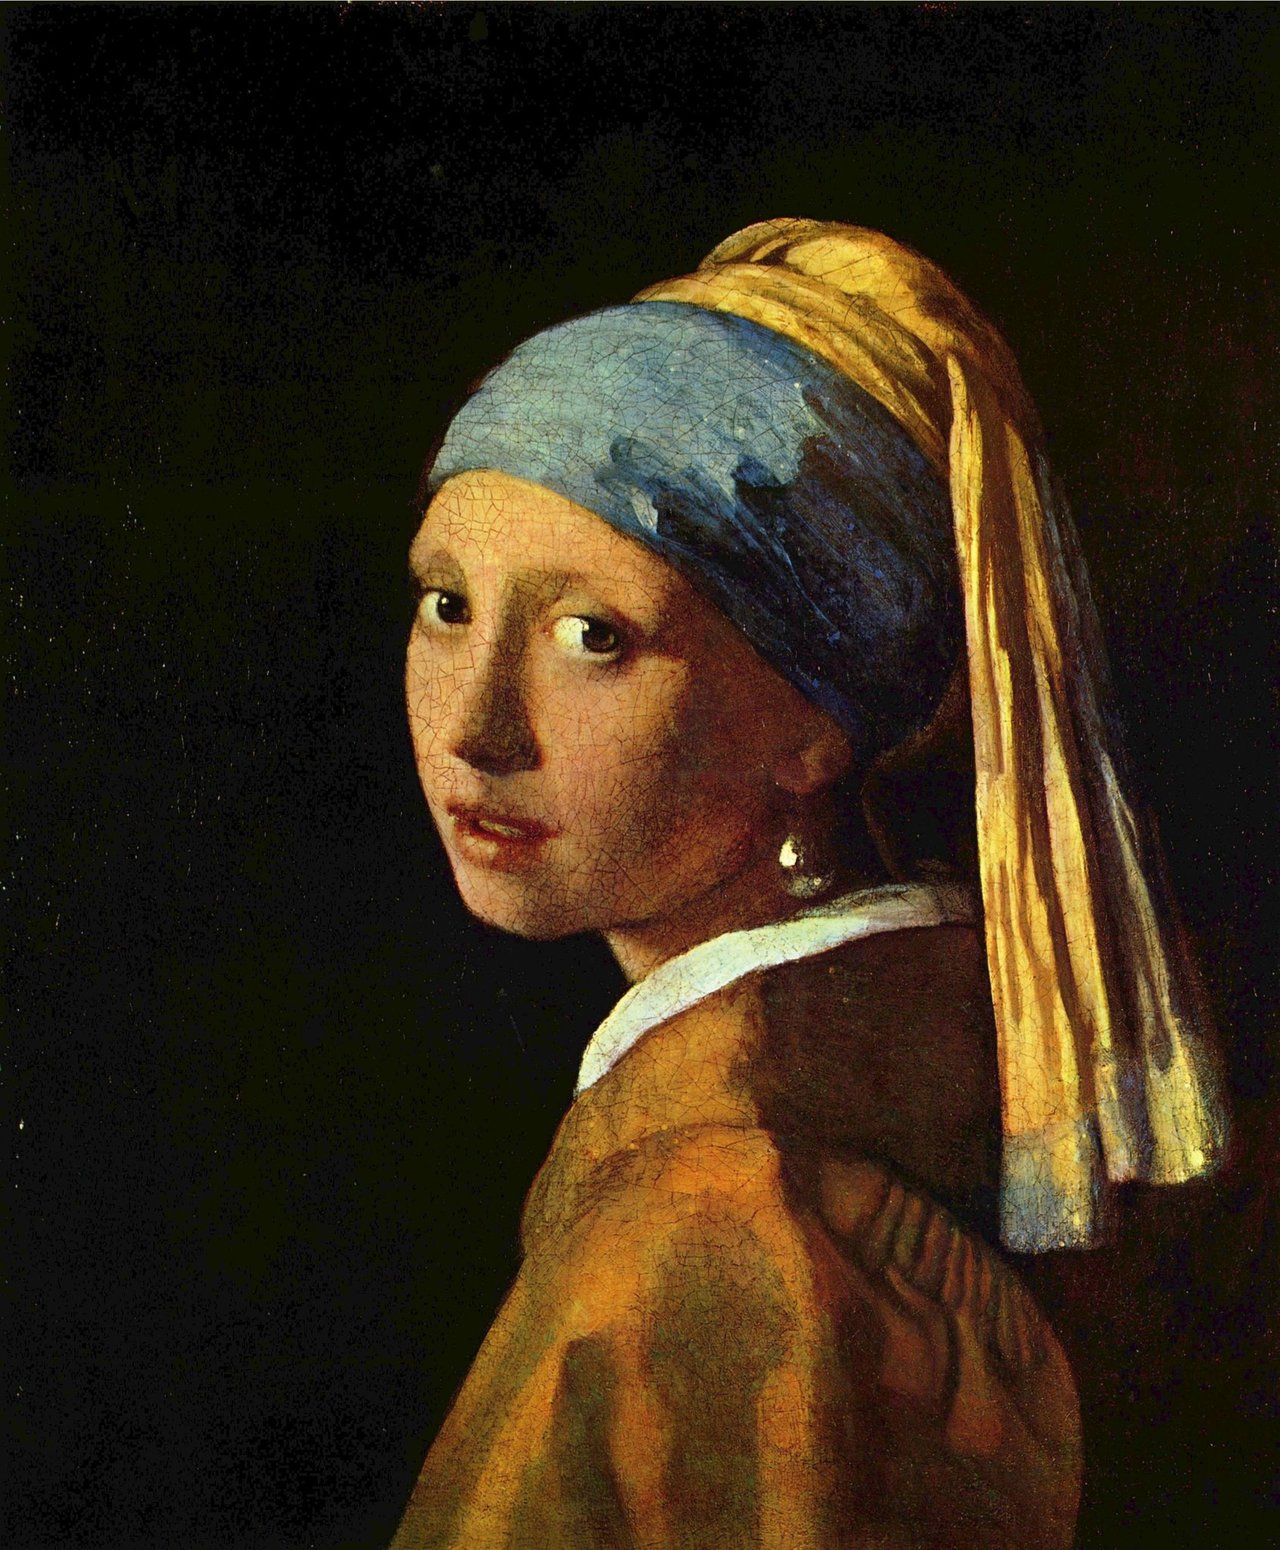 #Art .::. Johannes Vermeer 1635 - 1675 »Das Mädchen mit der Perle« → @mkaplanPMP @MeloMelendez @sancialagoyes6 http://t.co/KJQ22BMOtN